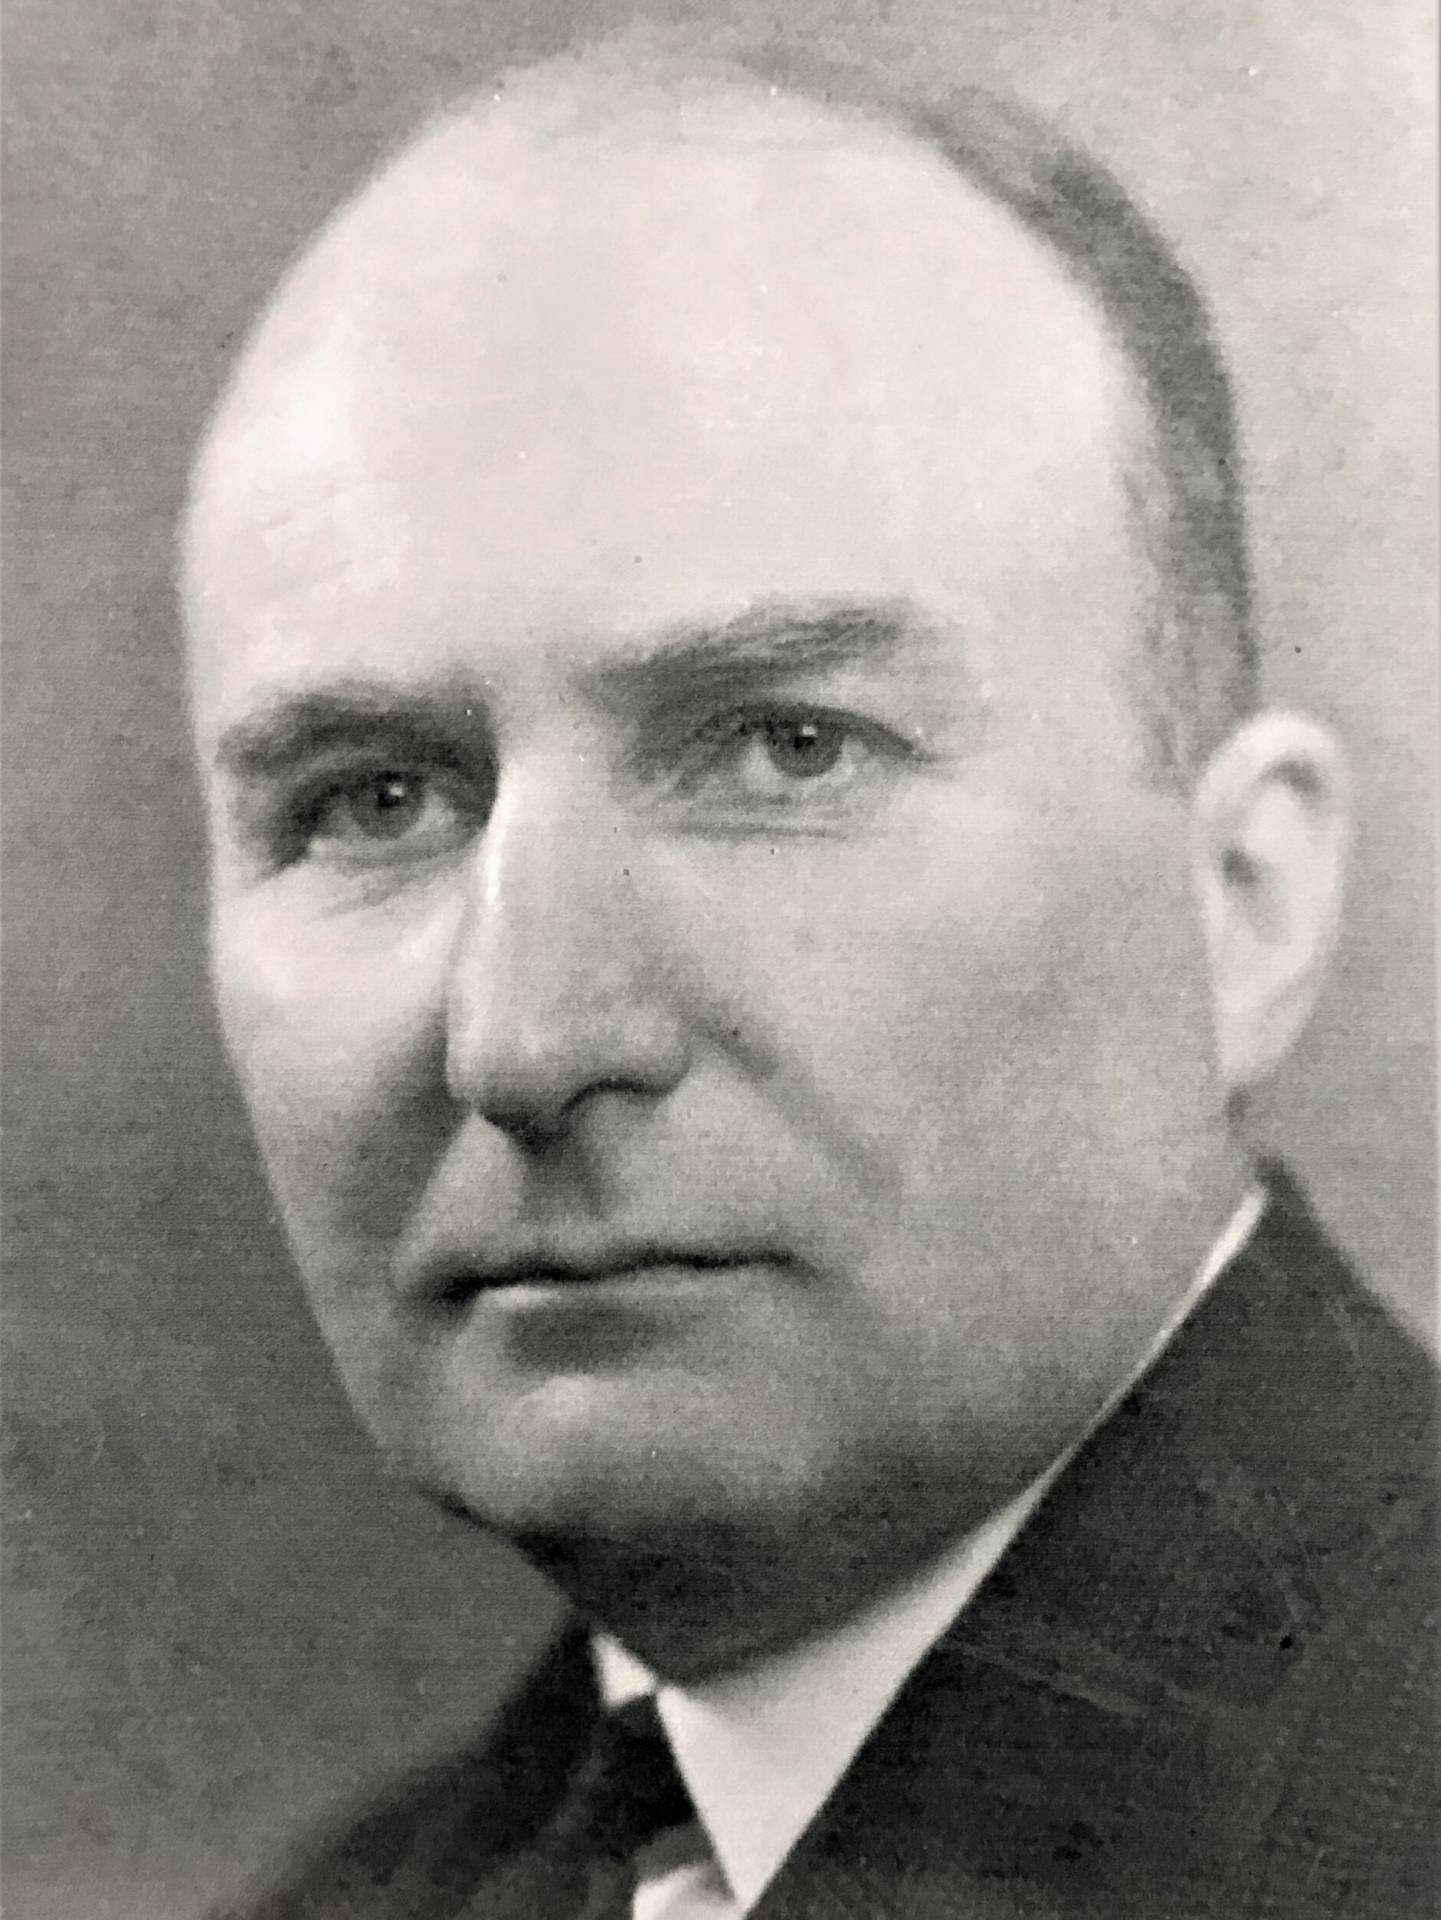 Leslie in 1933